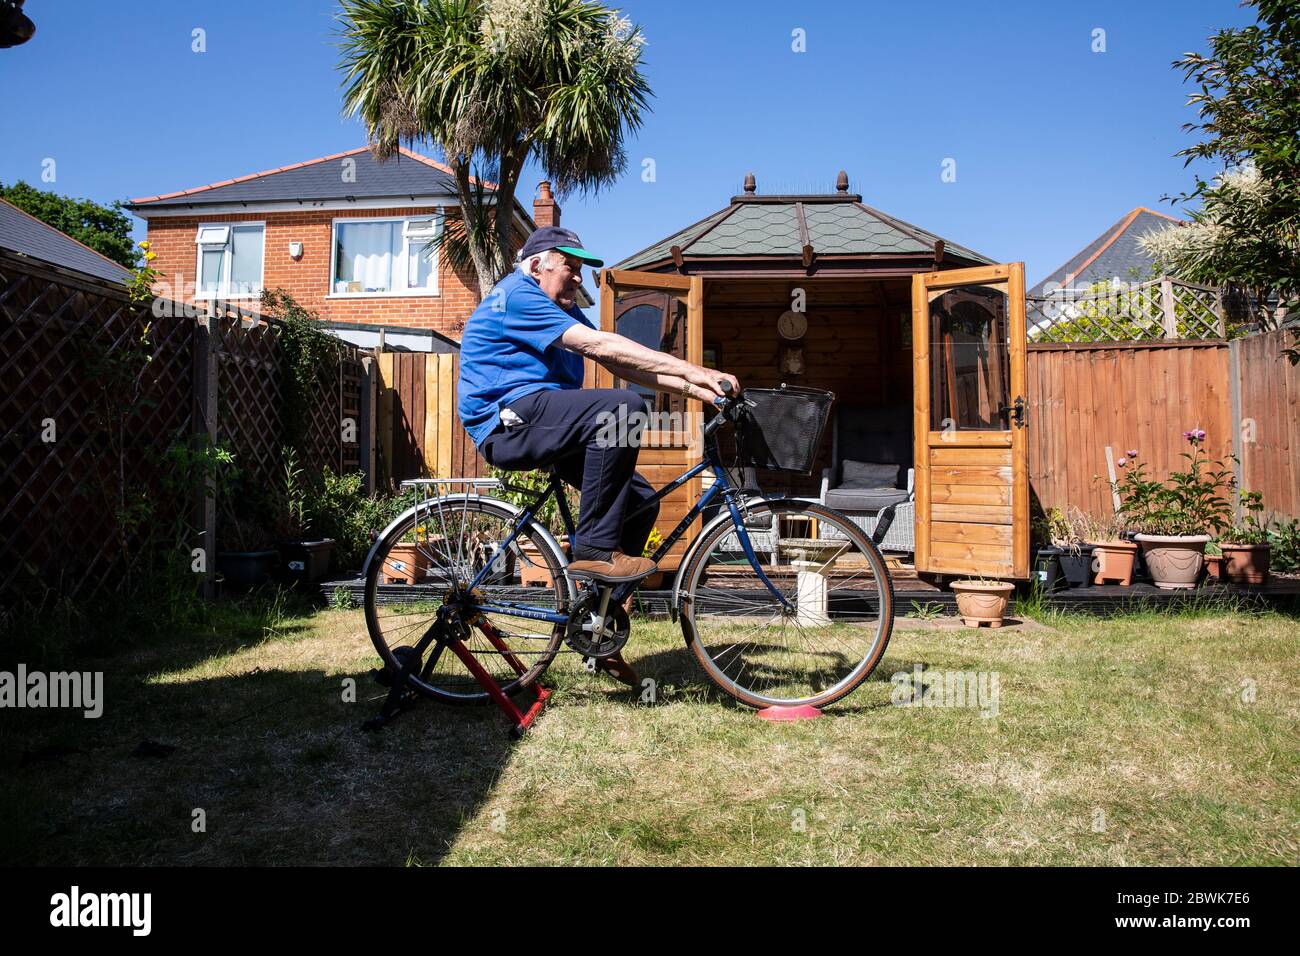 Coppie anziane sia nel loro 80 che tengono la misura su un supporto dell'addestratore della bicicletta nel loro giardino posteriore durante il lockdown del coronavirus, Inghilterra sudoccidentale, Regno Unito Foto Stock